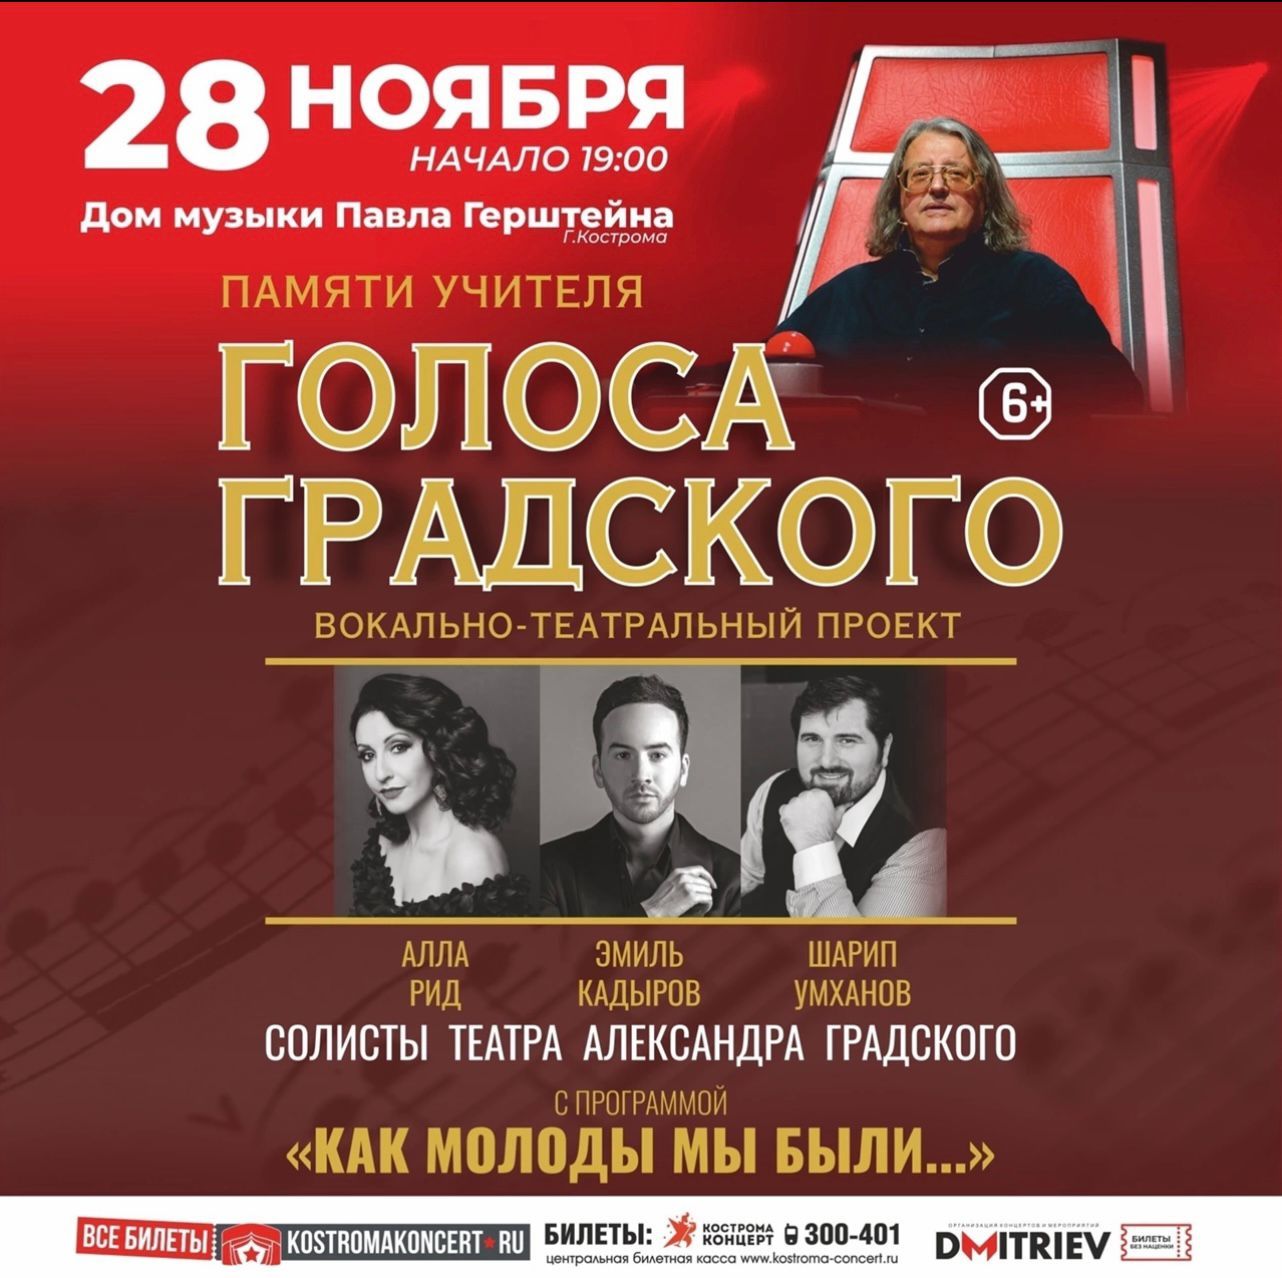 Участники шоу «Голос» споют в Костроме в день памяти наставника Александра Градского